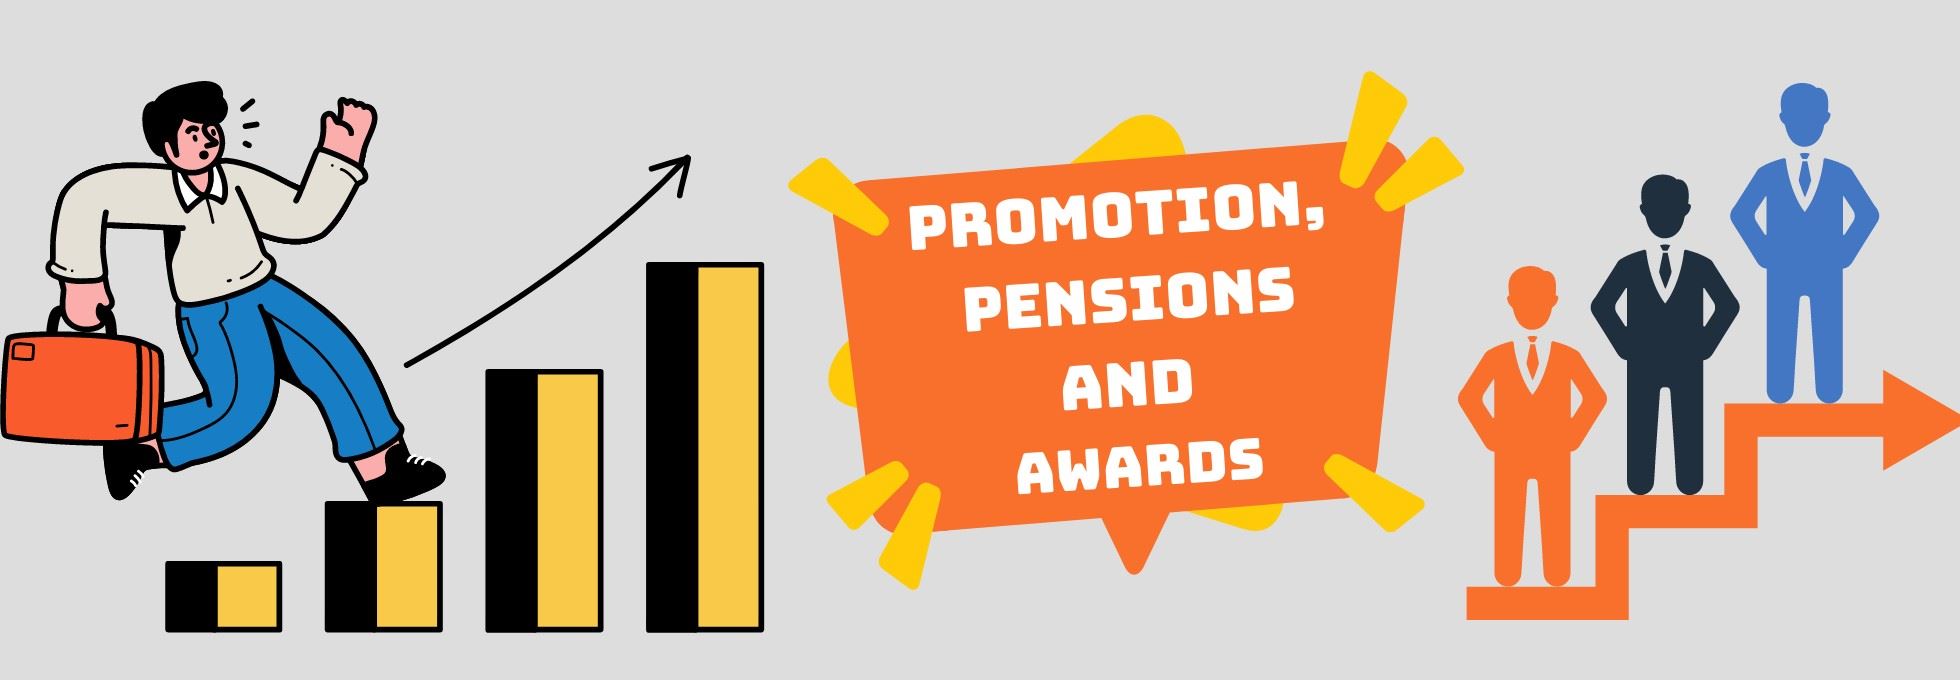 Promotions, Pensions and Awards – nhóm từ vựng TOEIC theo chủ đề bạn cần hiểu sâu